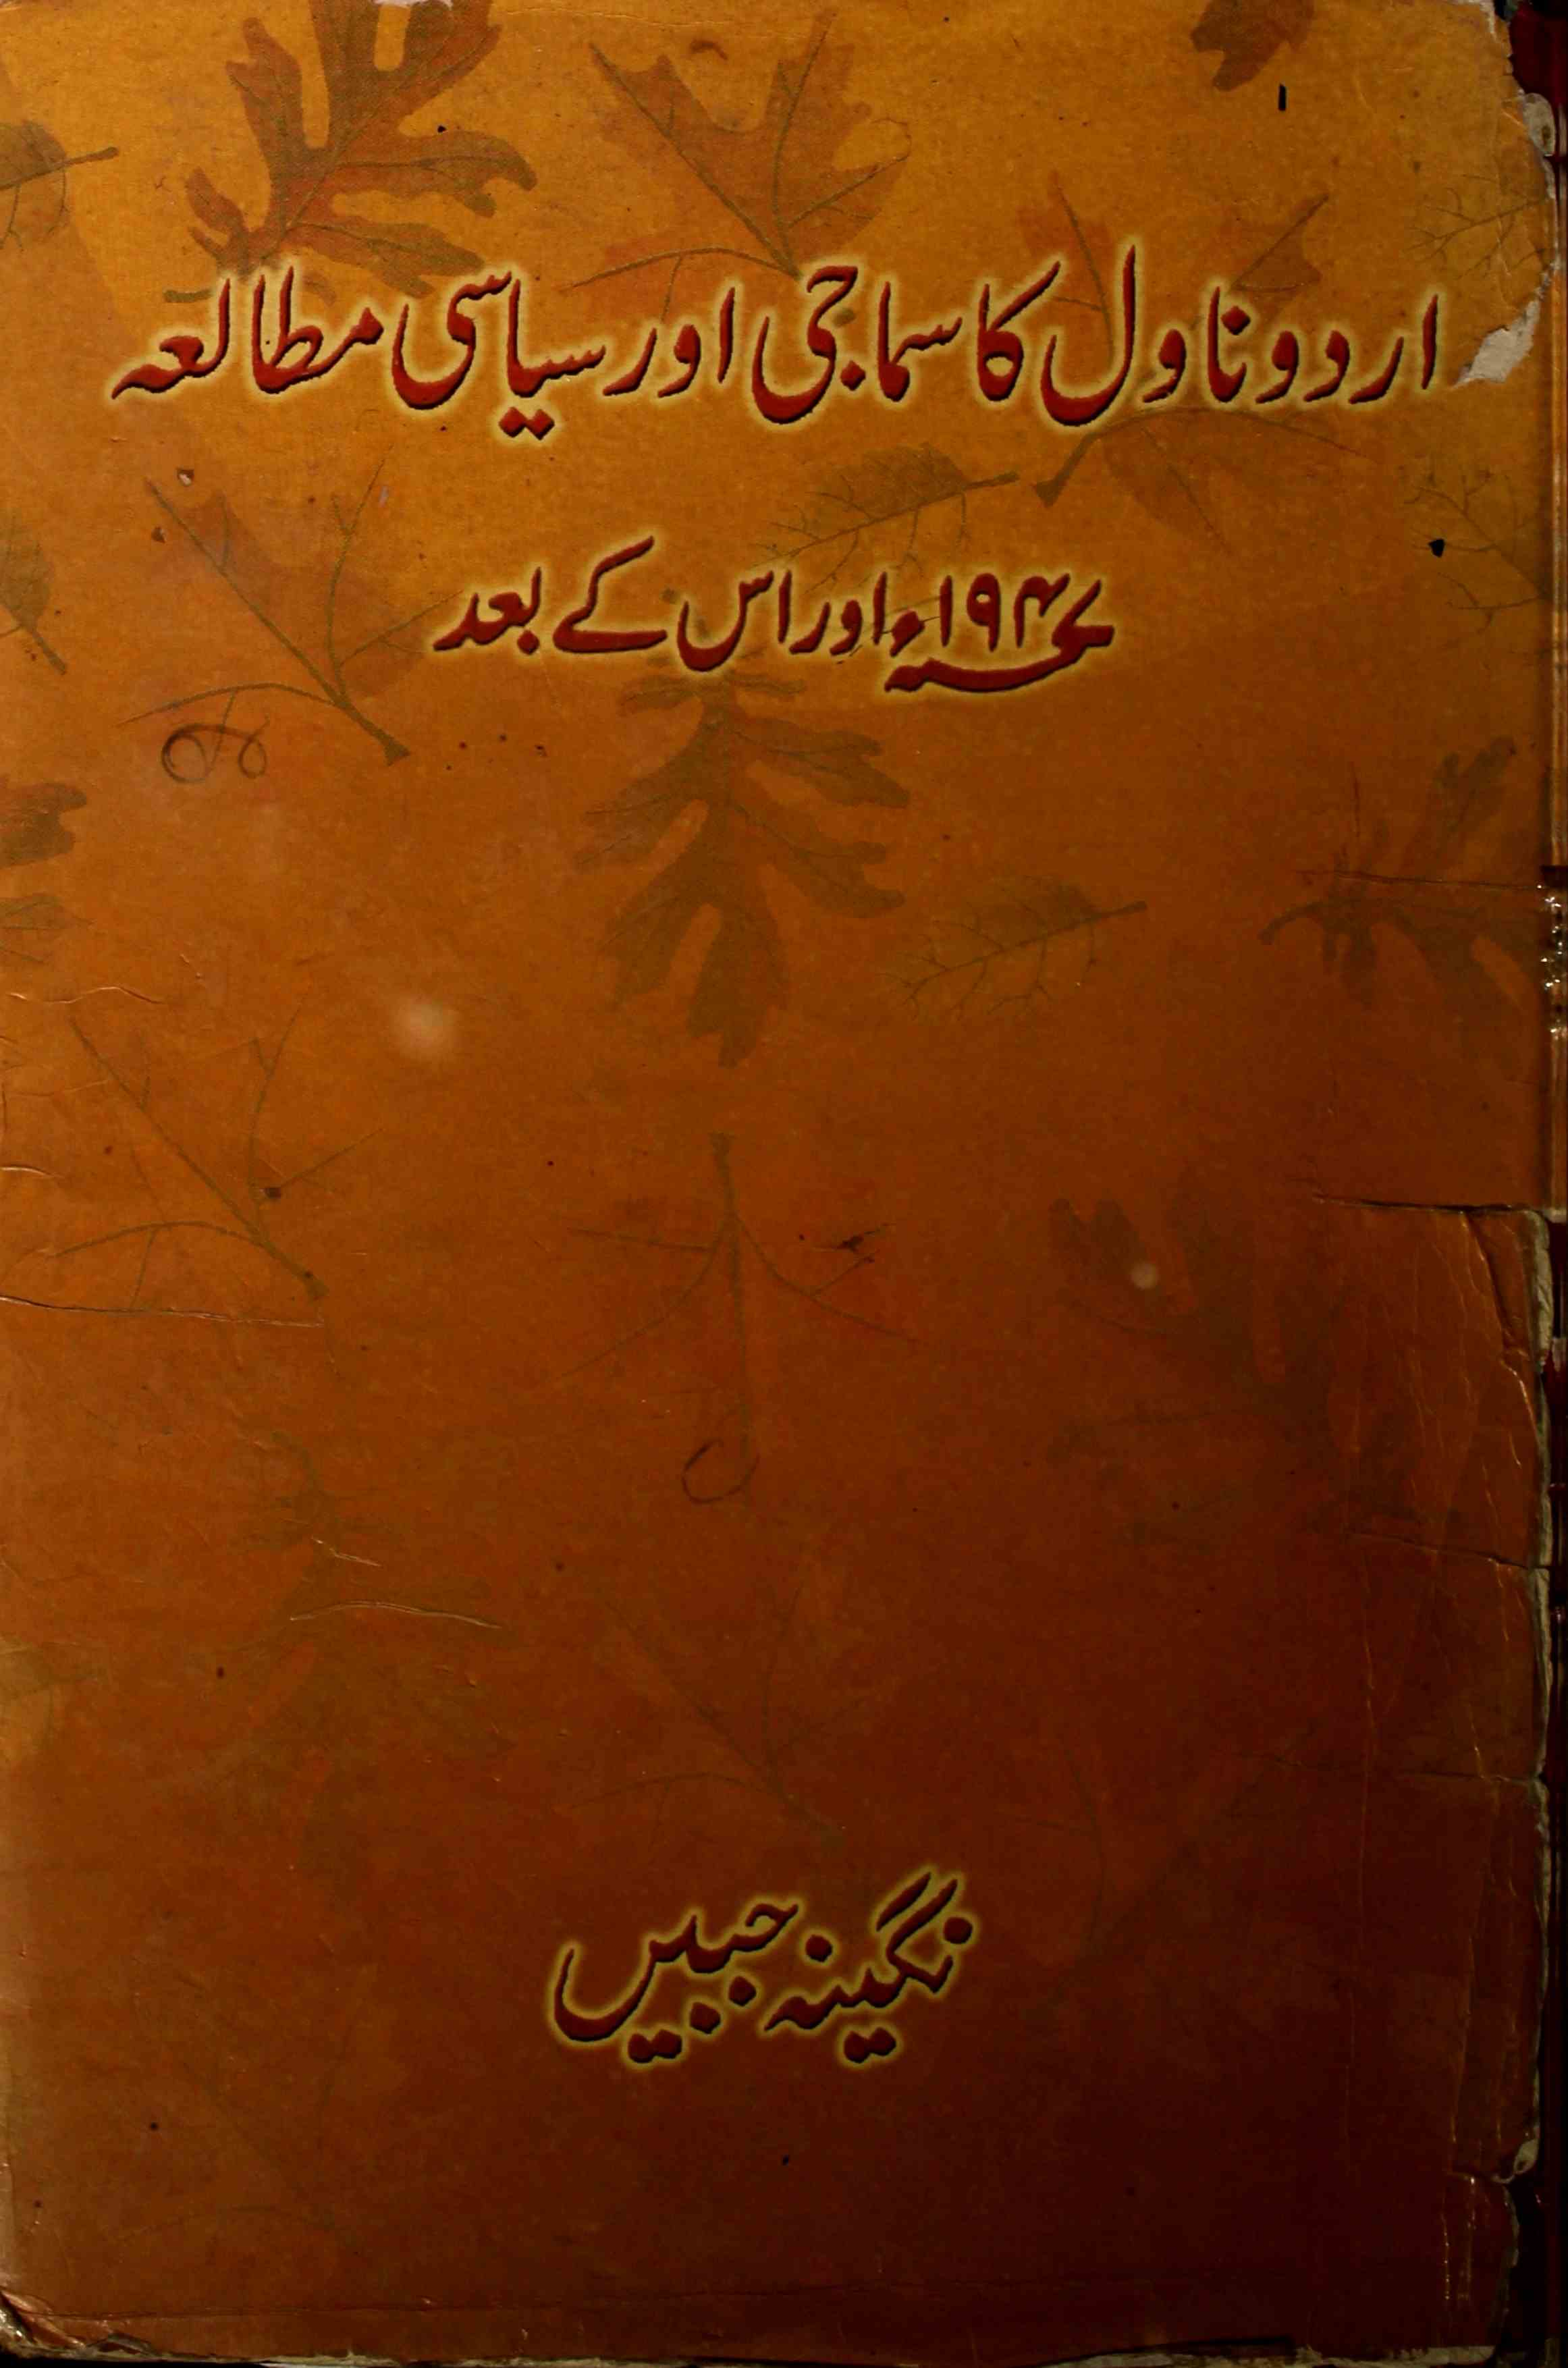 اردو ناول کا سماجی اور سیاسی مطالعہ 1947 اور اس کے بعد